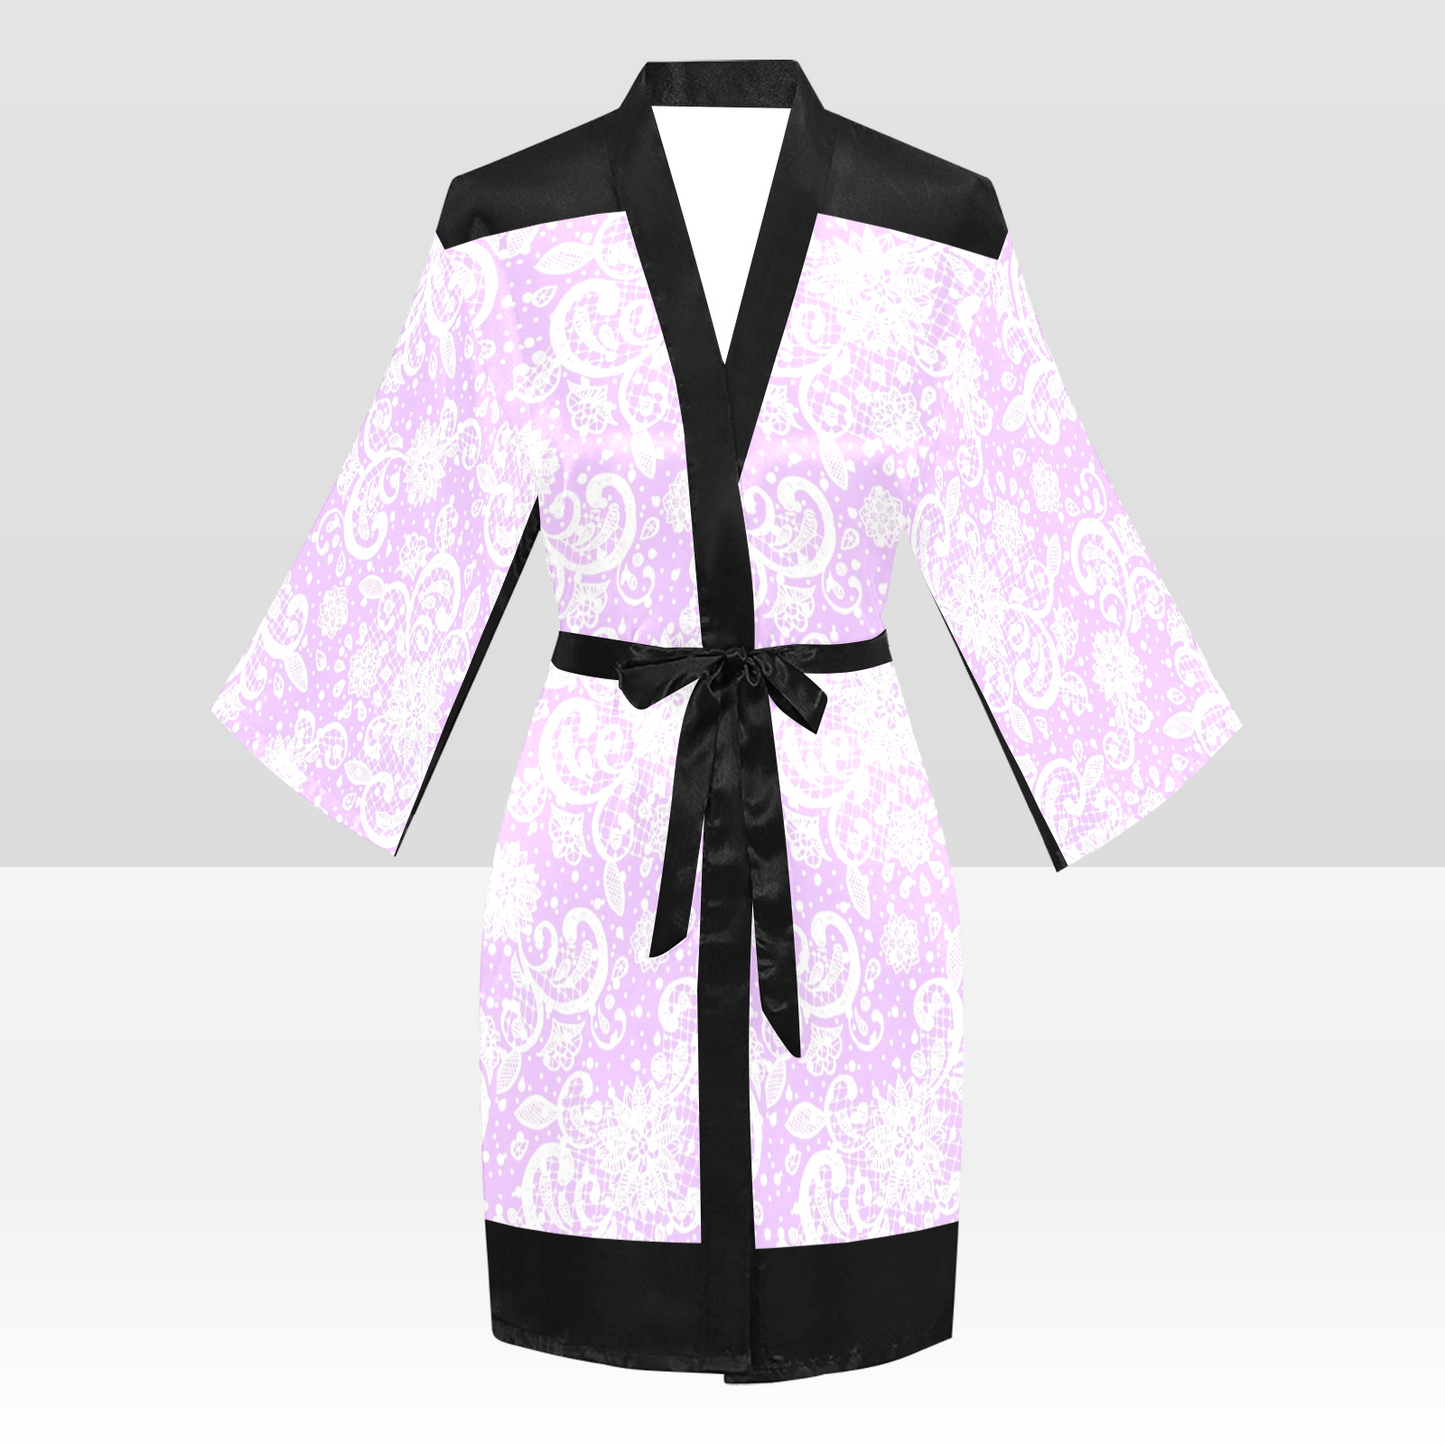 Victorian Lace Kimono Robe, Black or White Trim, Sizes XS to 2XL, Design 06